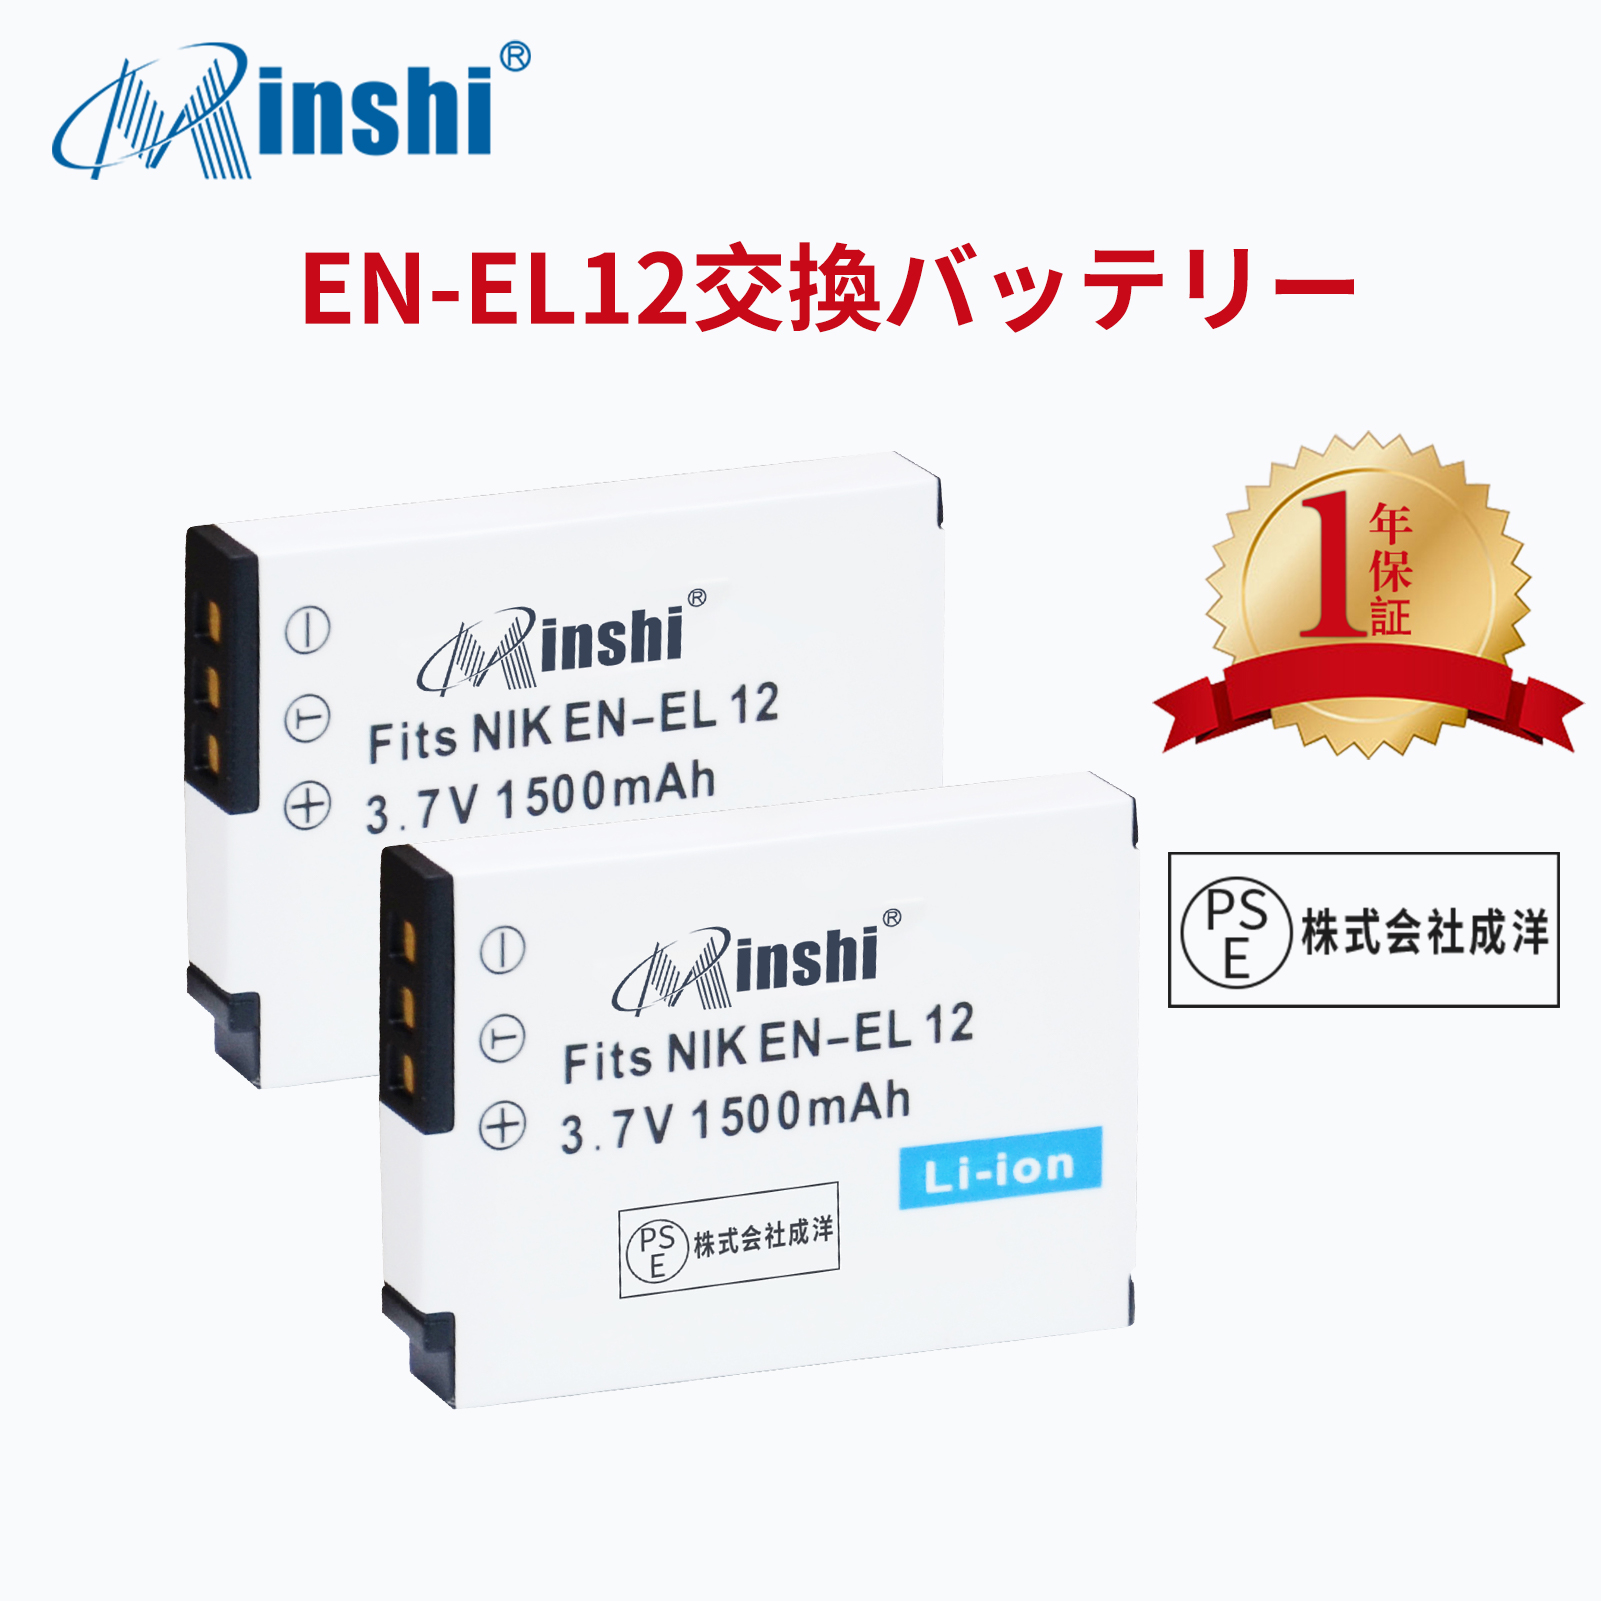 【２個】minshi NIKON COOLPIX S800c AW100 【1500mAh 3.7V】PSE認定済 高品質 EN-EL12 交換用バッテリー